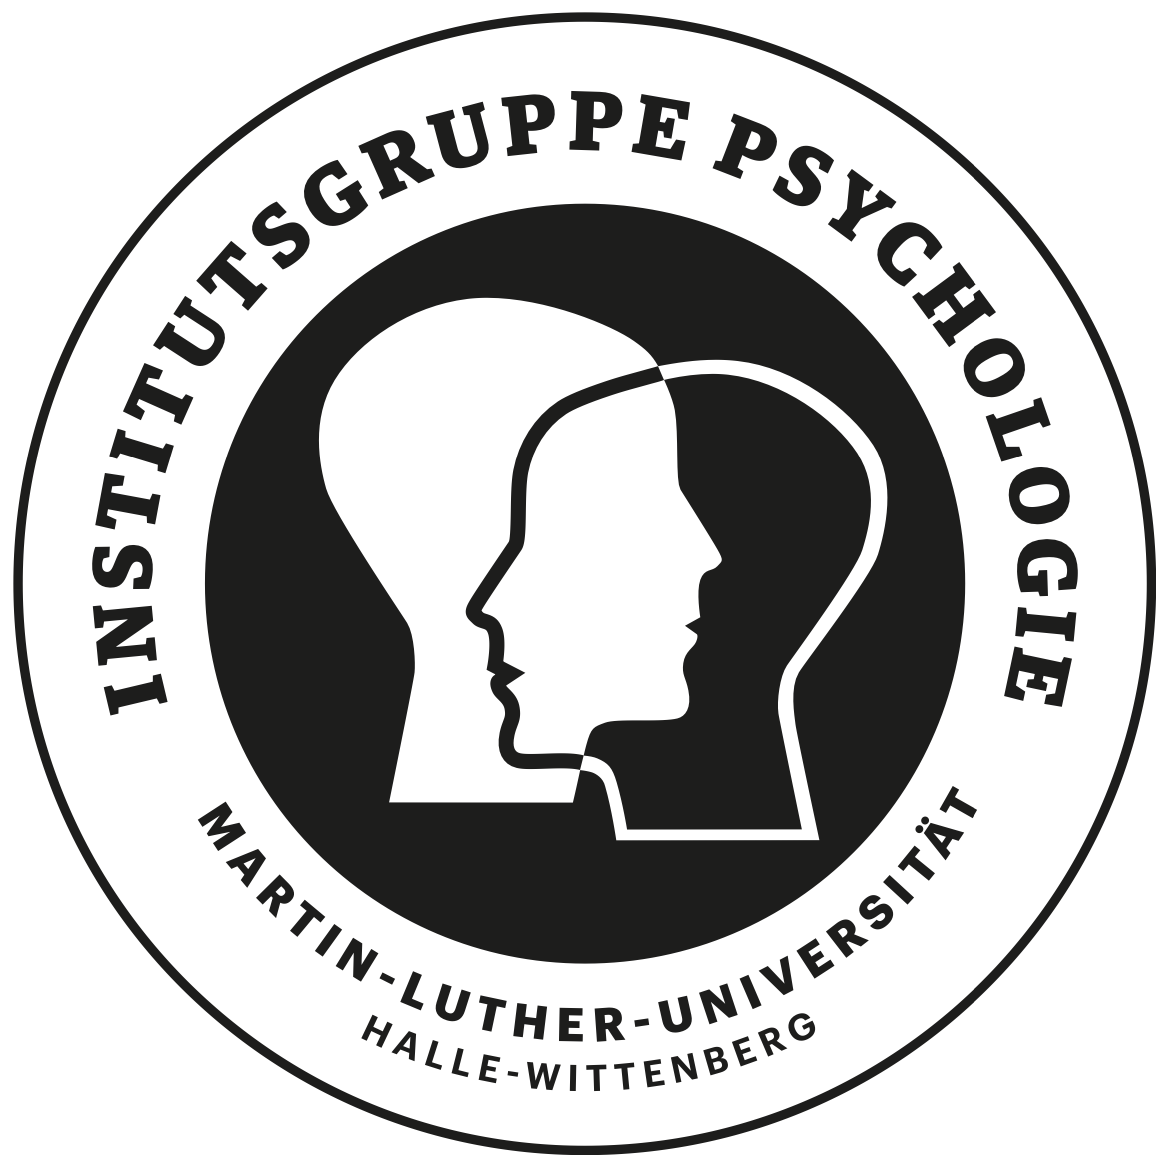 Institutsgruppe Psycholgie